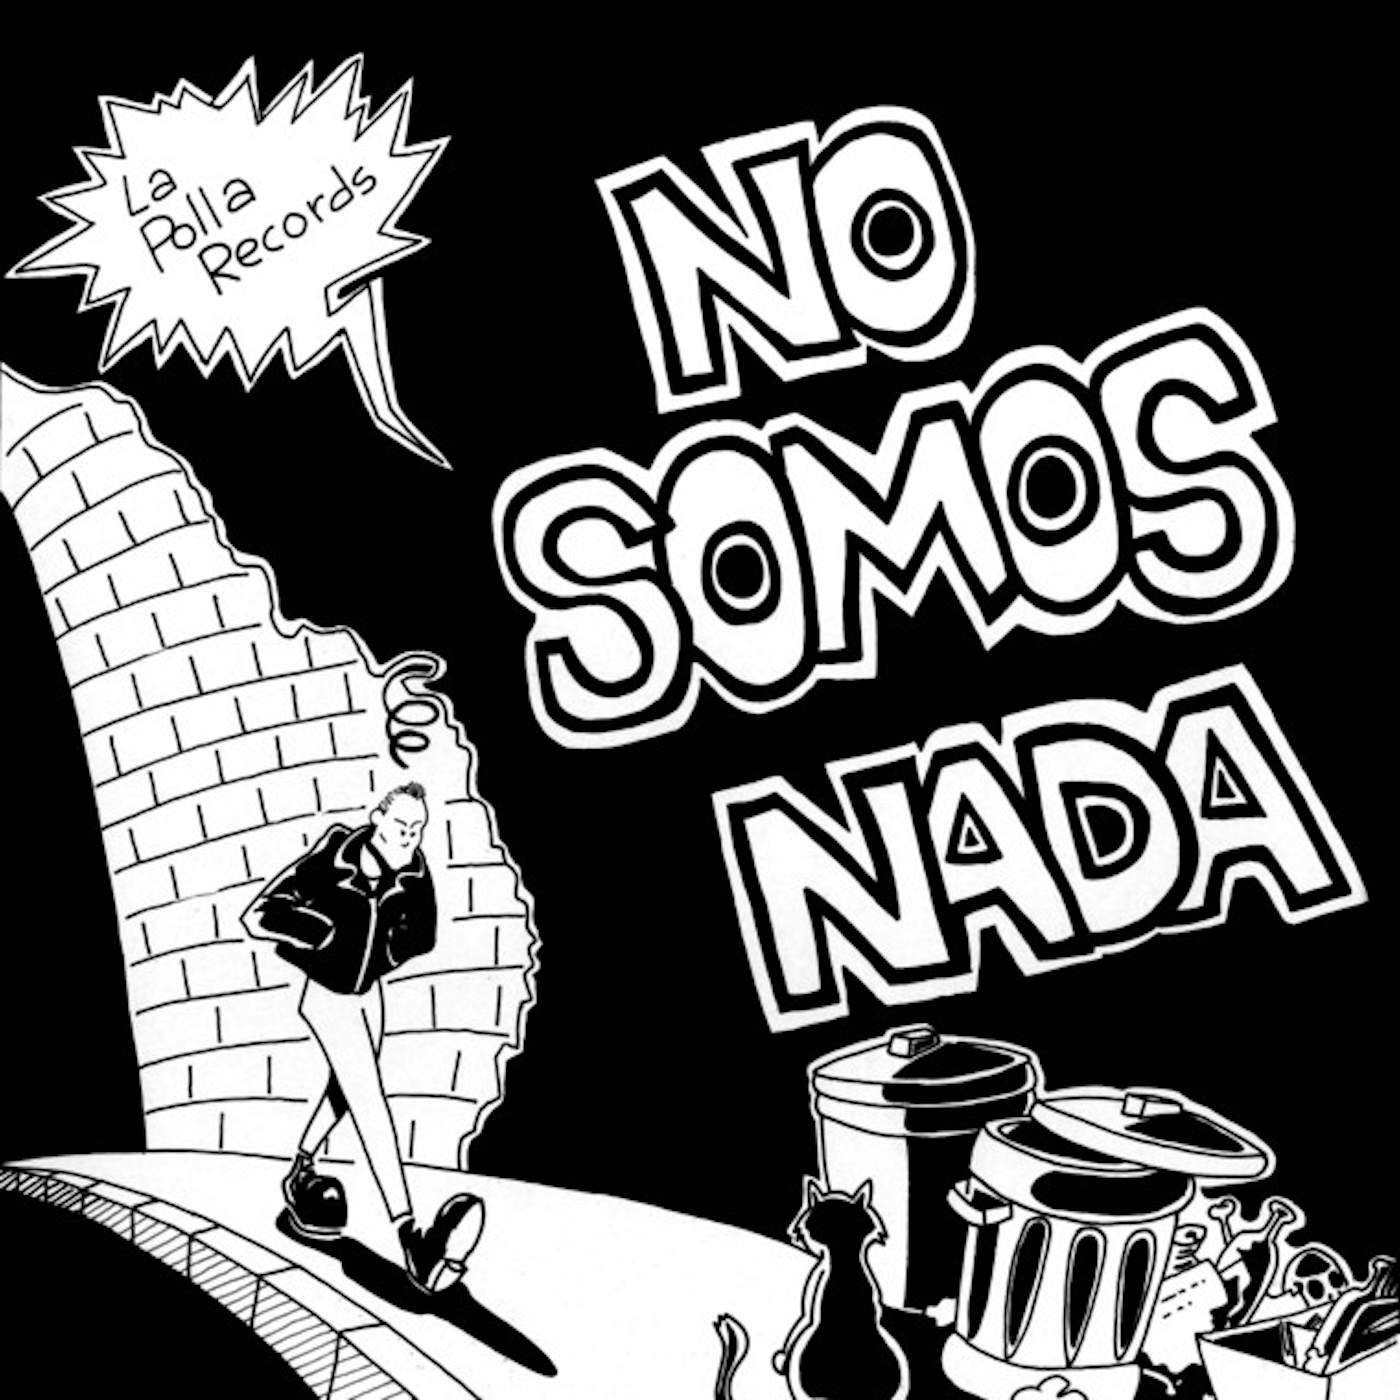 La Polla Records NO SOMOS NADA CD